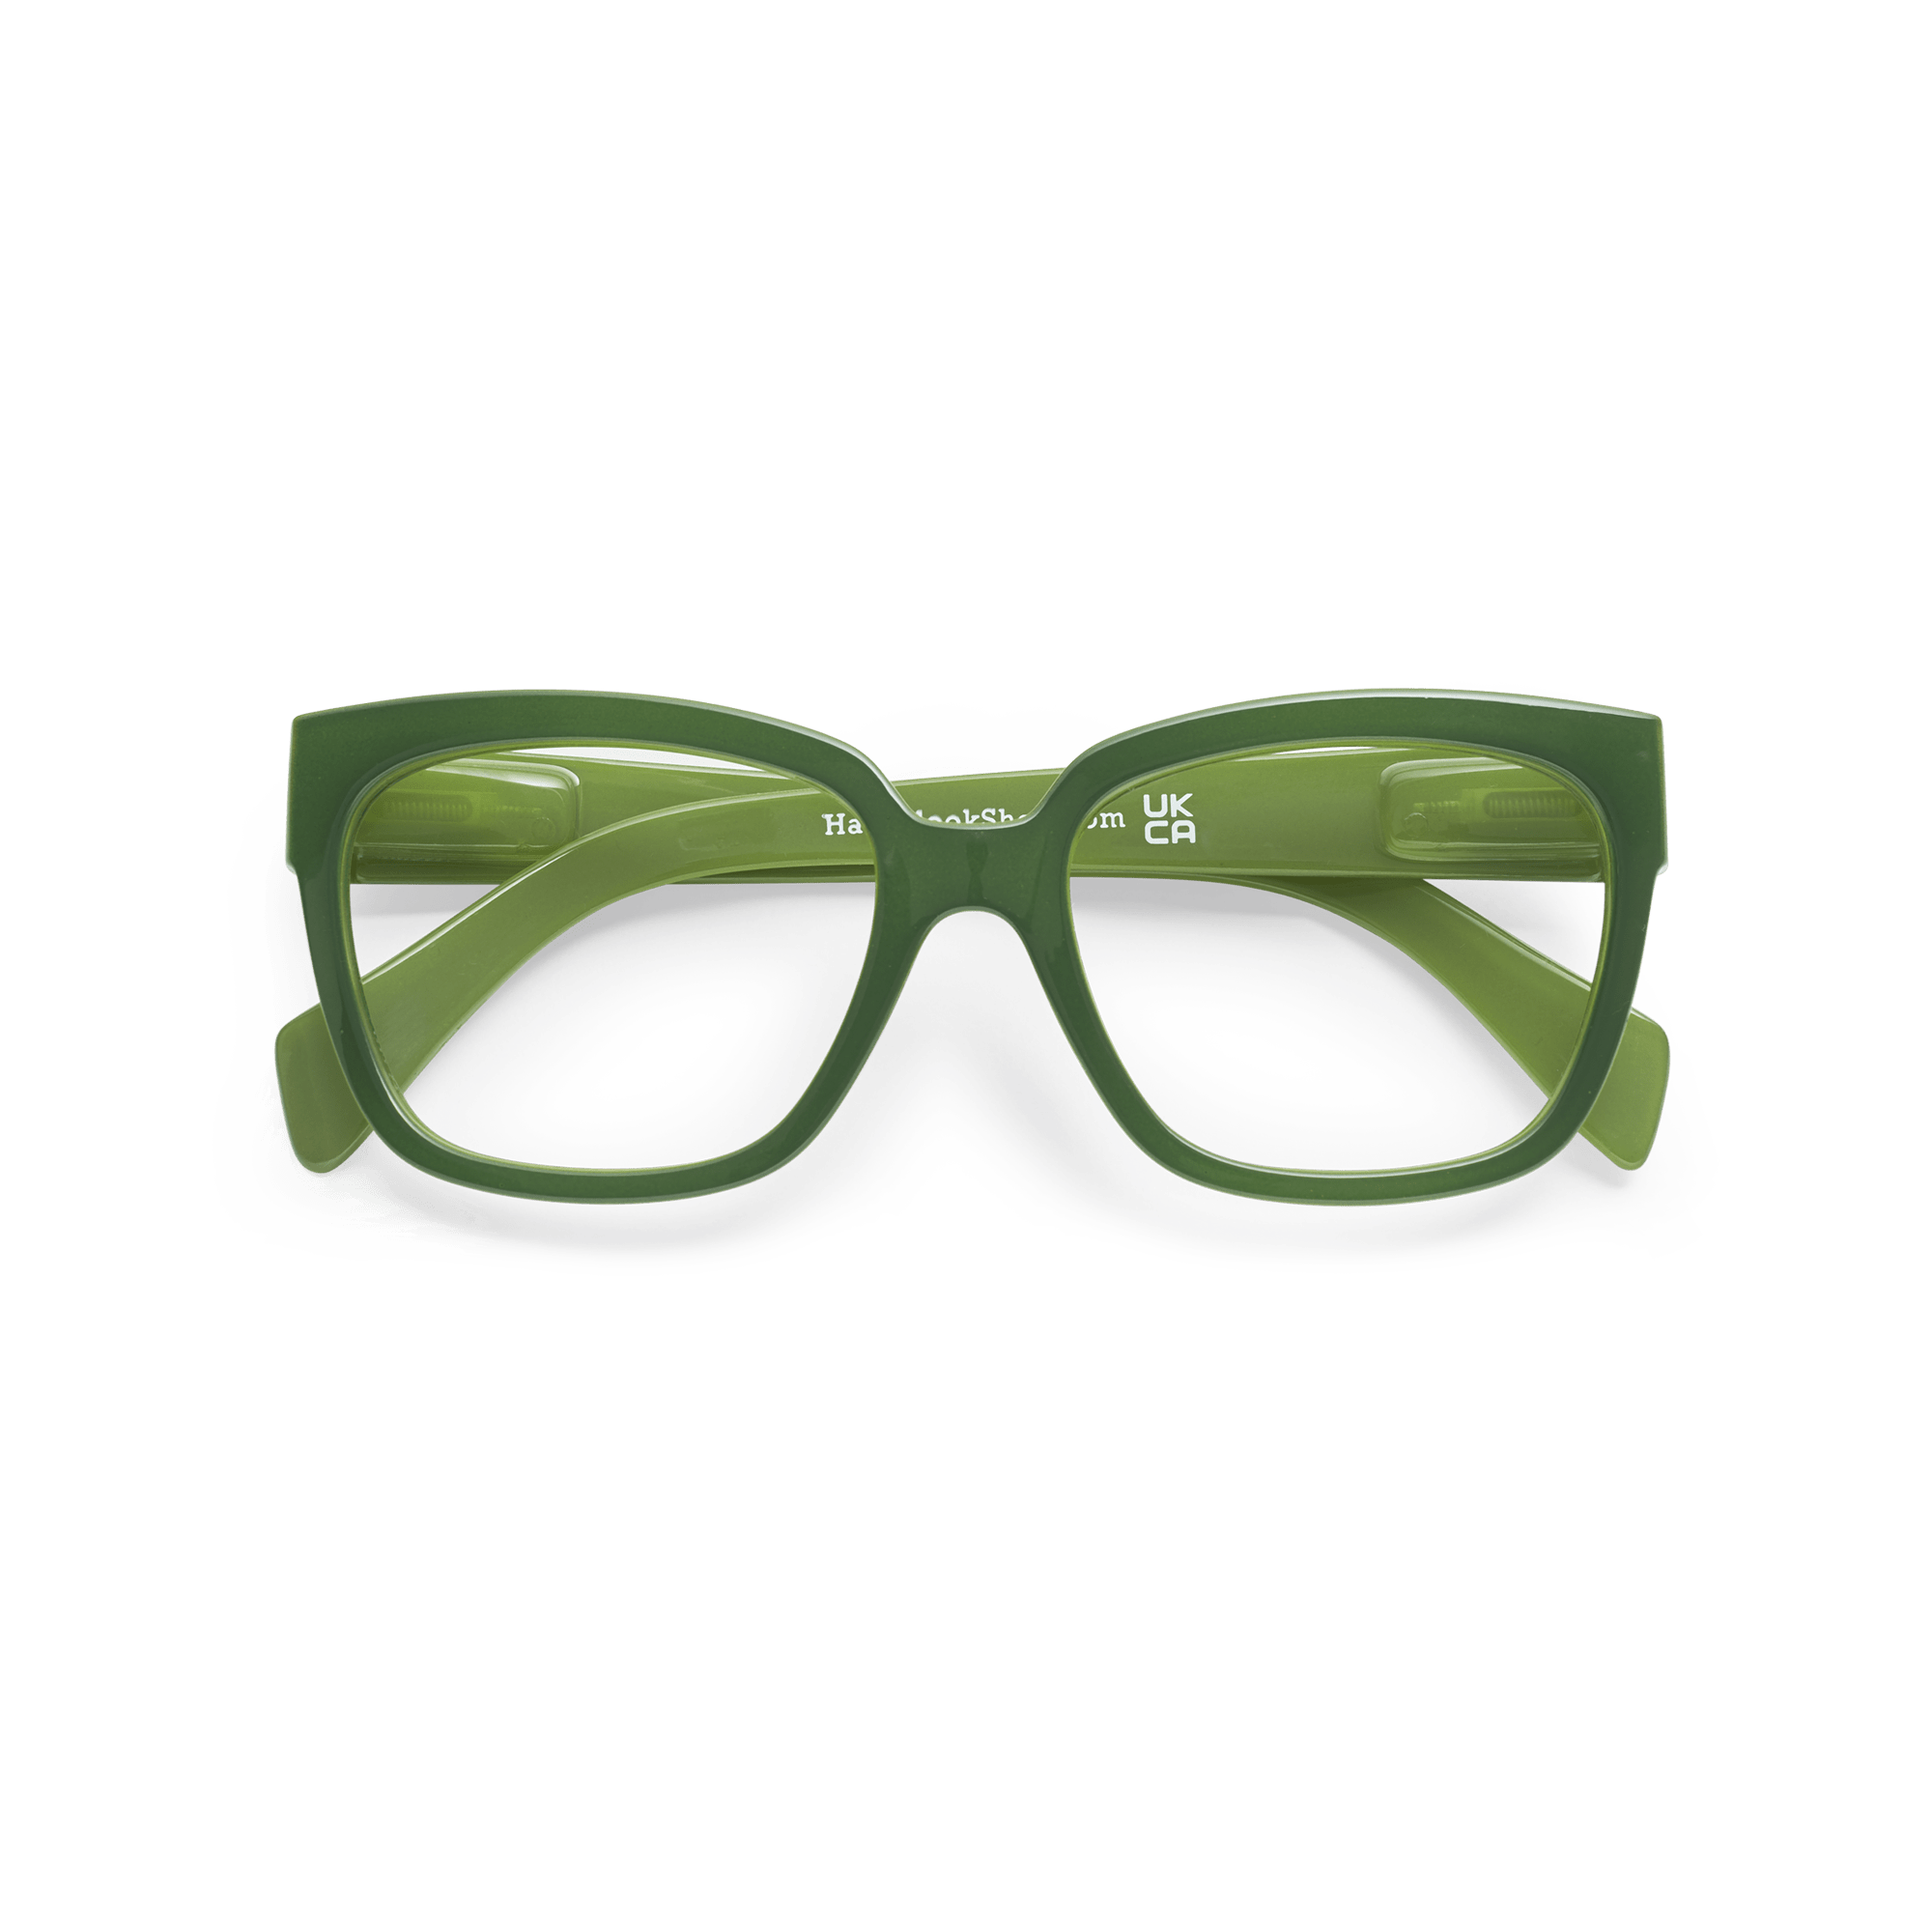 Fernbrillen Mood green aus Have A Look